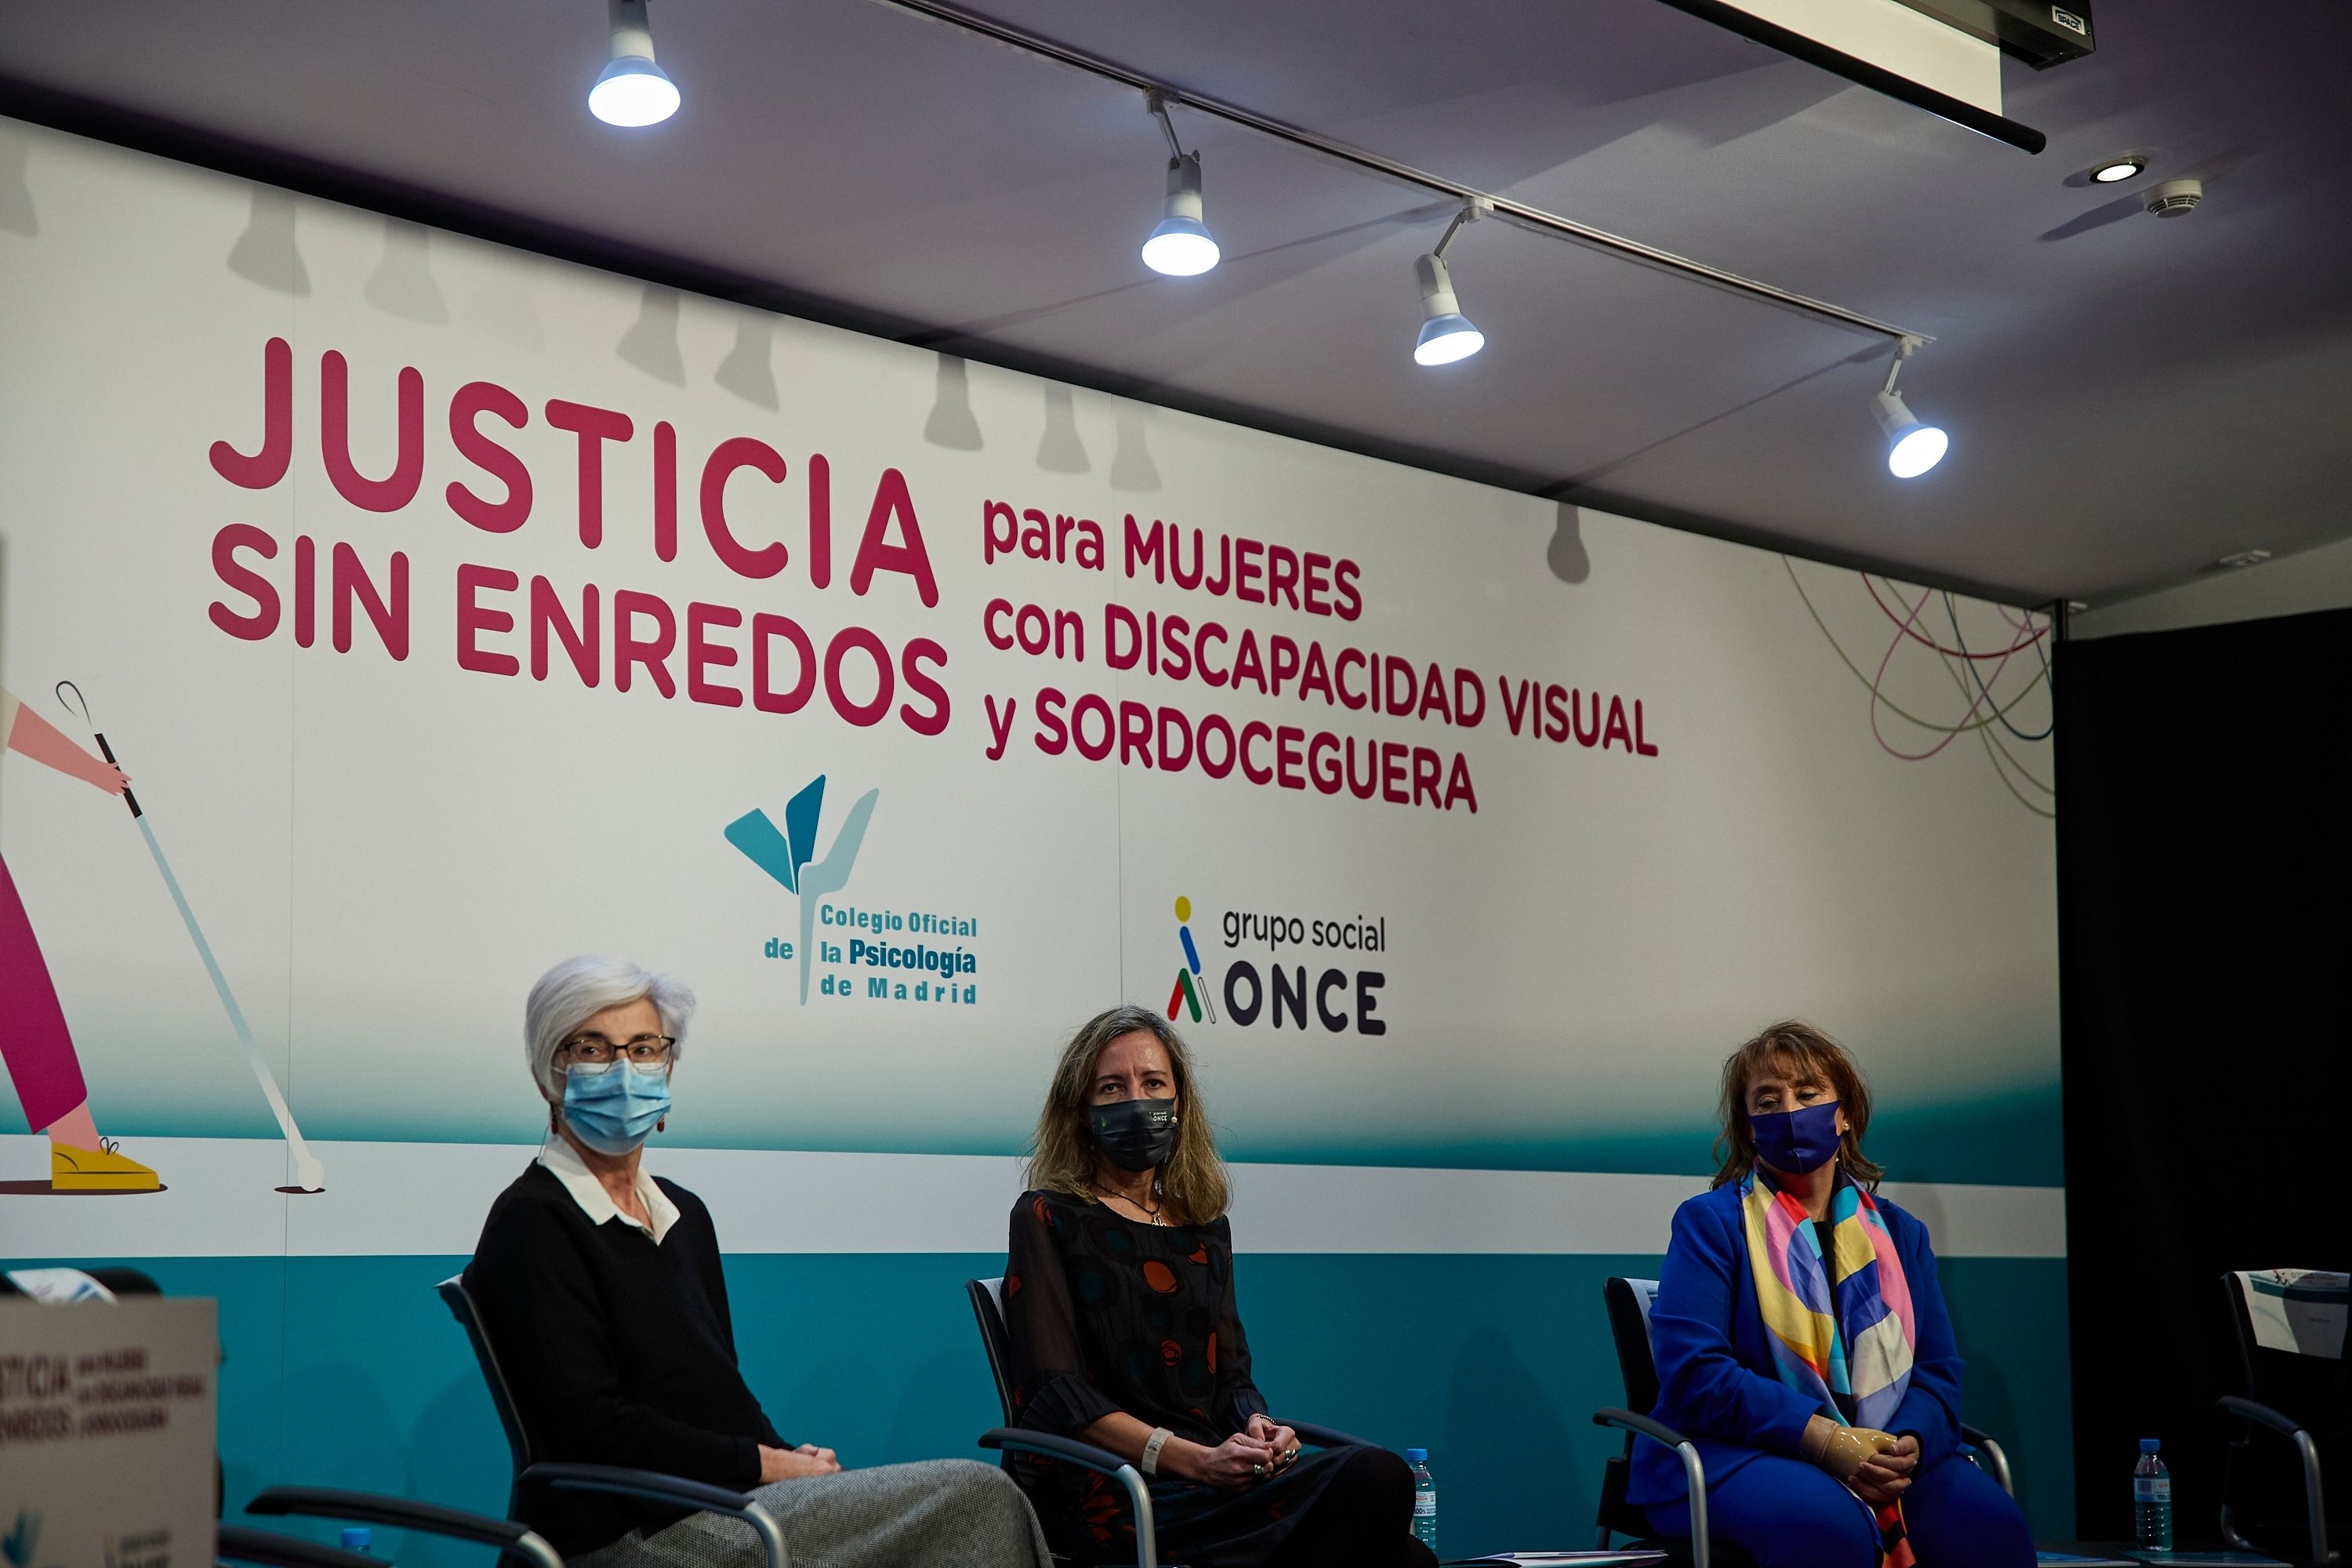 Dos guías ayudarán a mujeres con discapacidad visual o sordoceguera en su acceso a la Justicia. Foto: Europa PRess